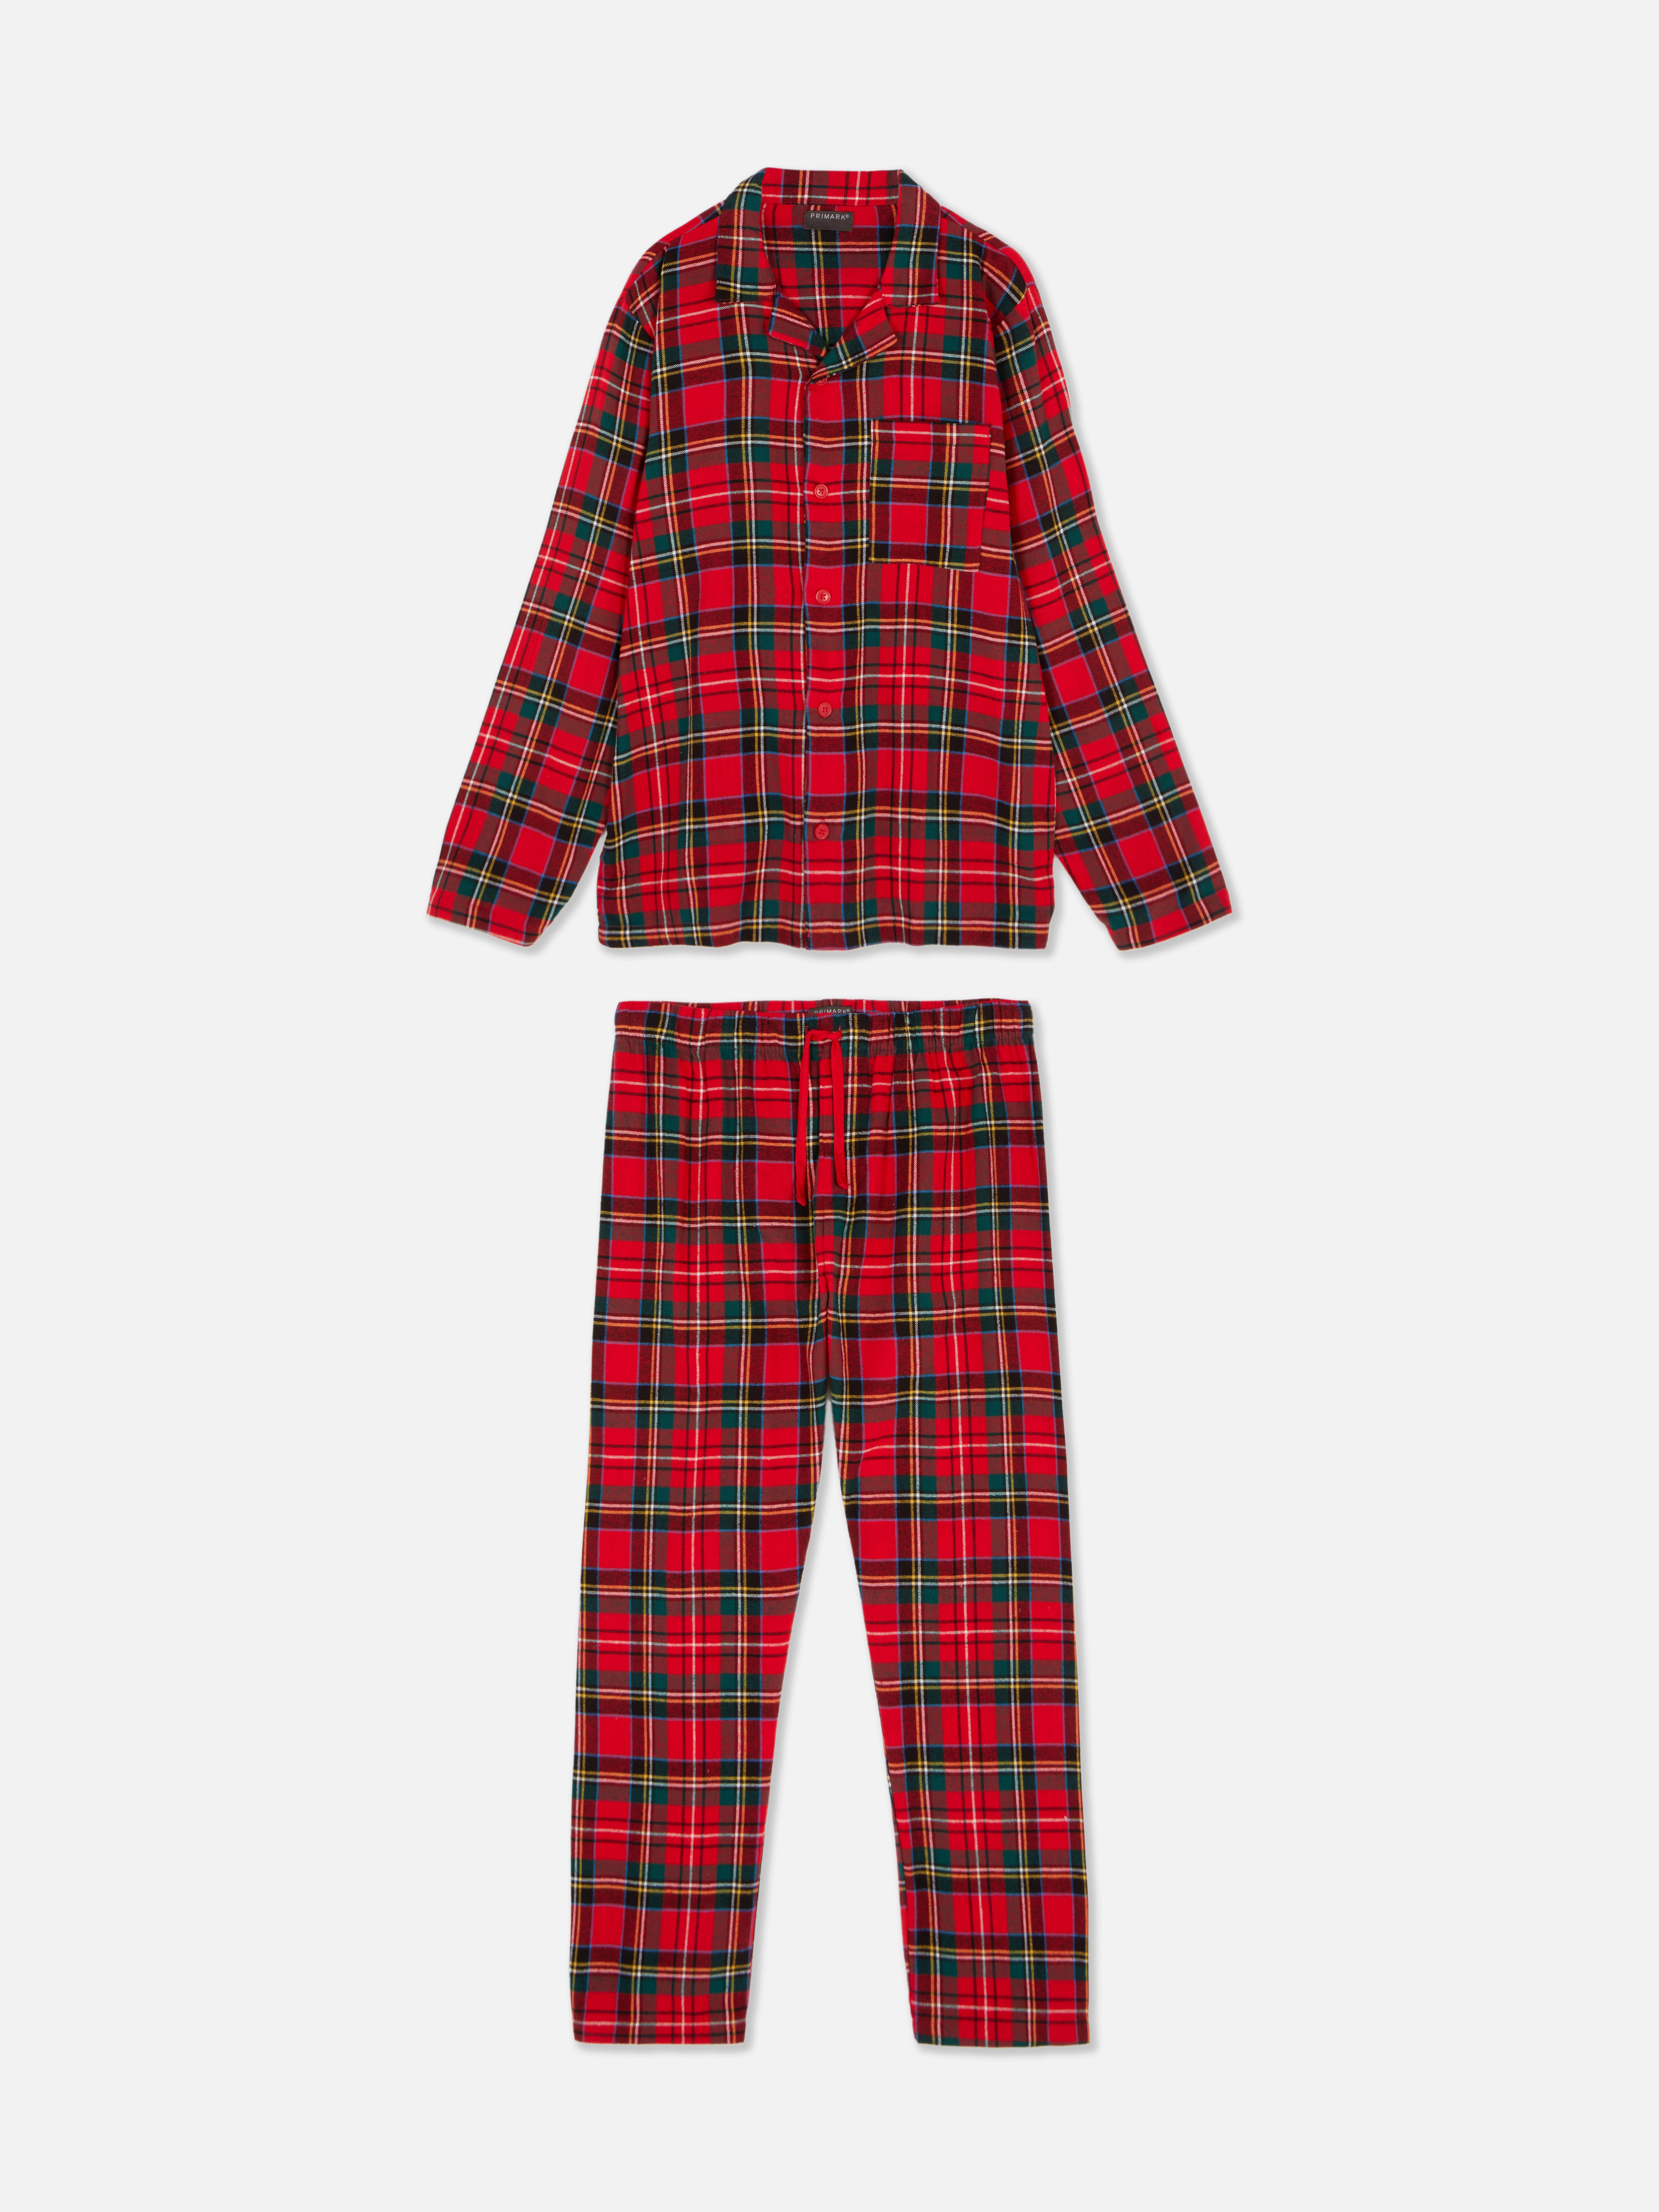 Men’s Tartan Christmas Family Pajamas